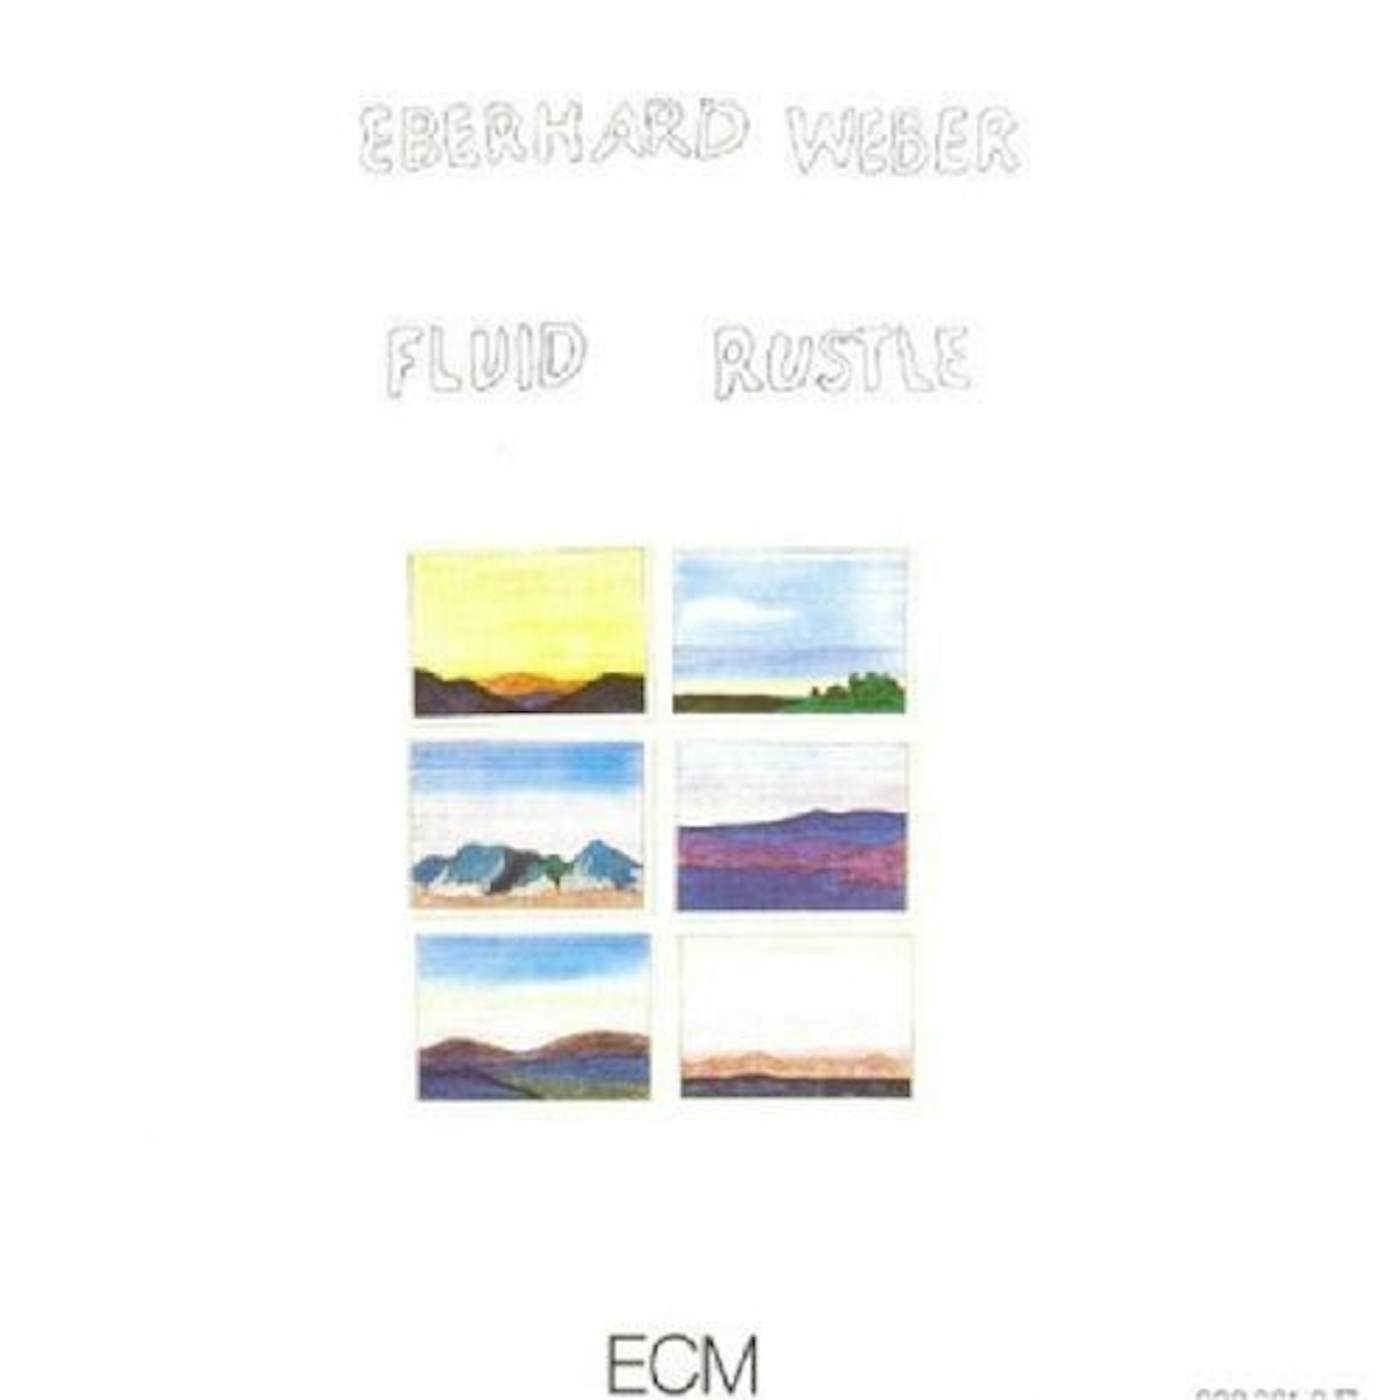 Eberhard Weber FLUID RUSTLE CD